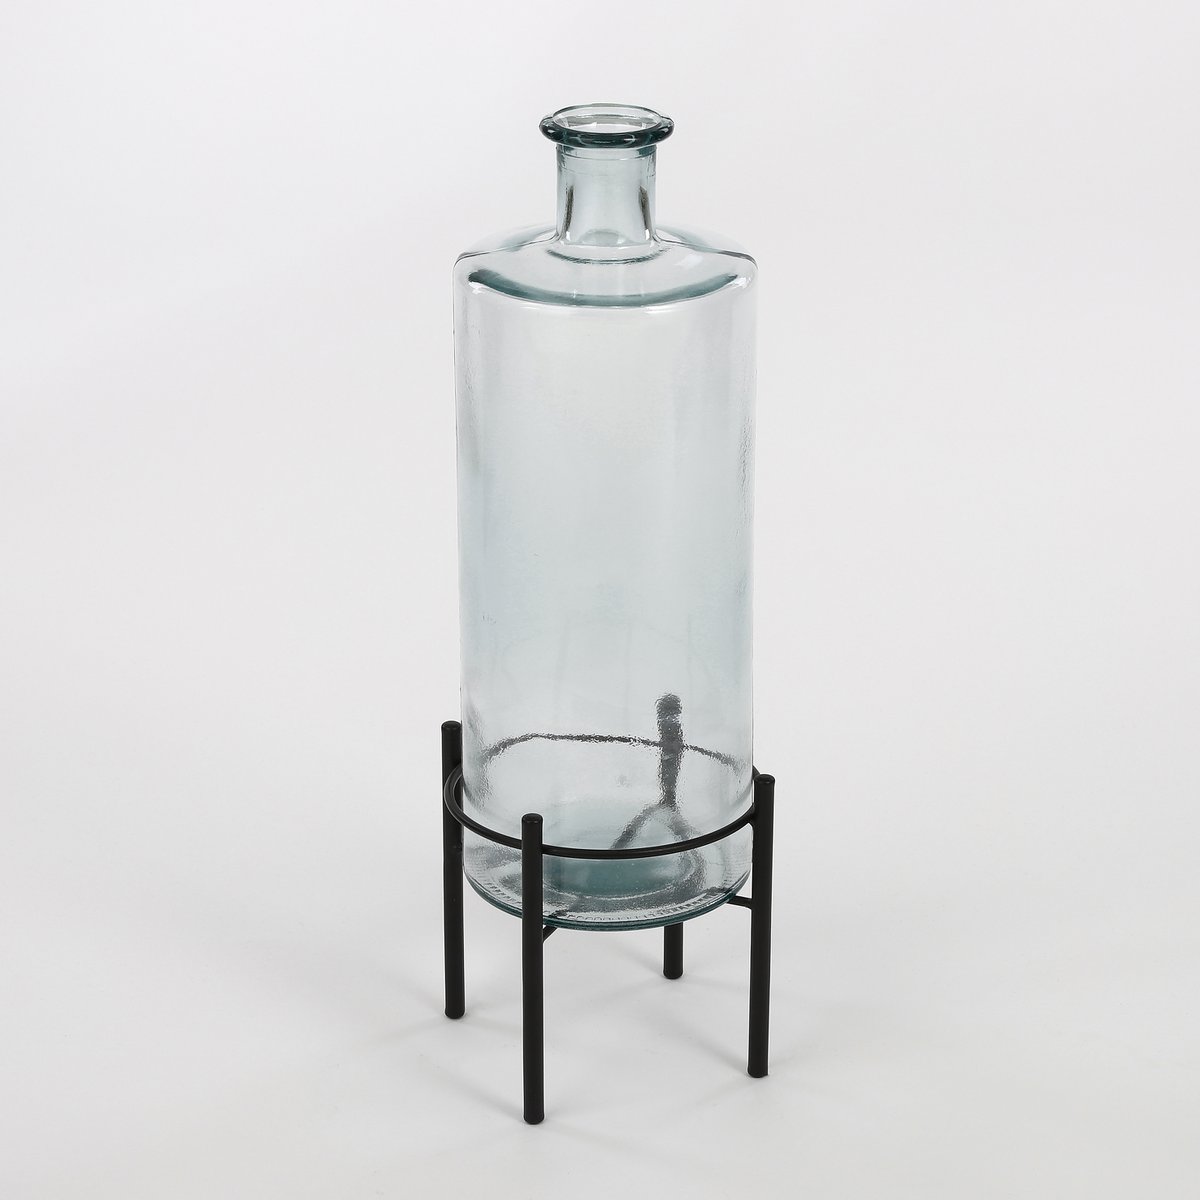 Guan-Flaschenvase – H75 x Ø25 cm – recyceltes Glas – transparent